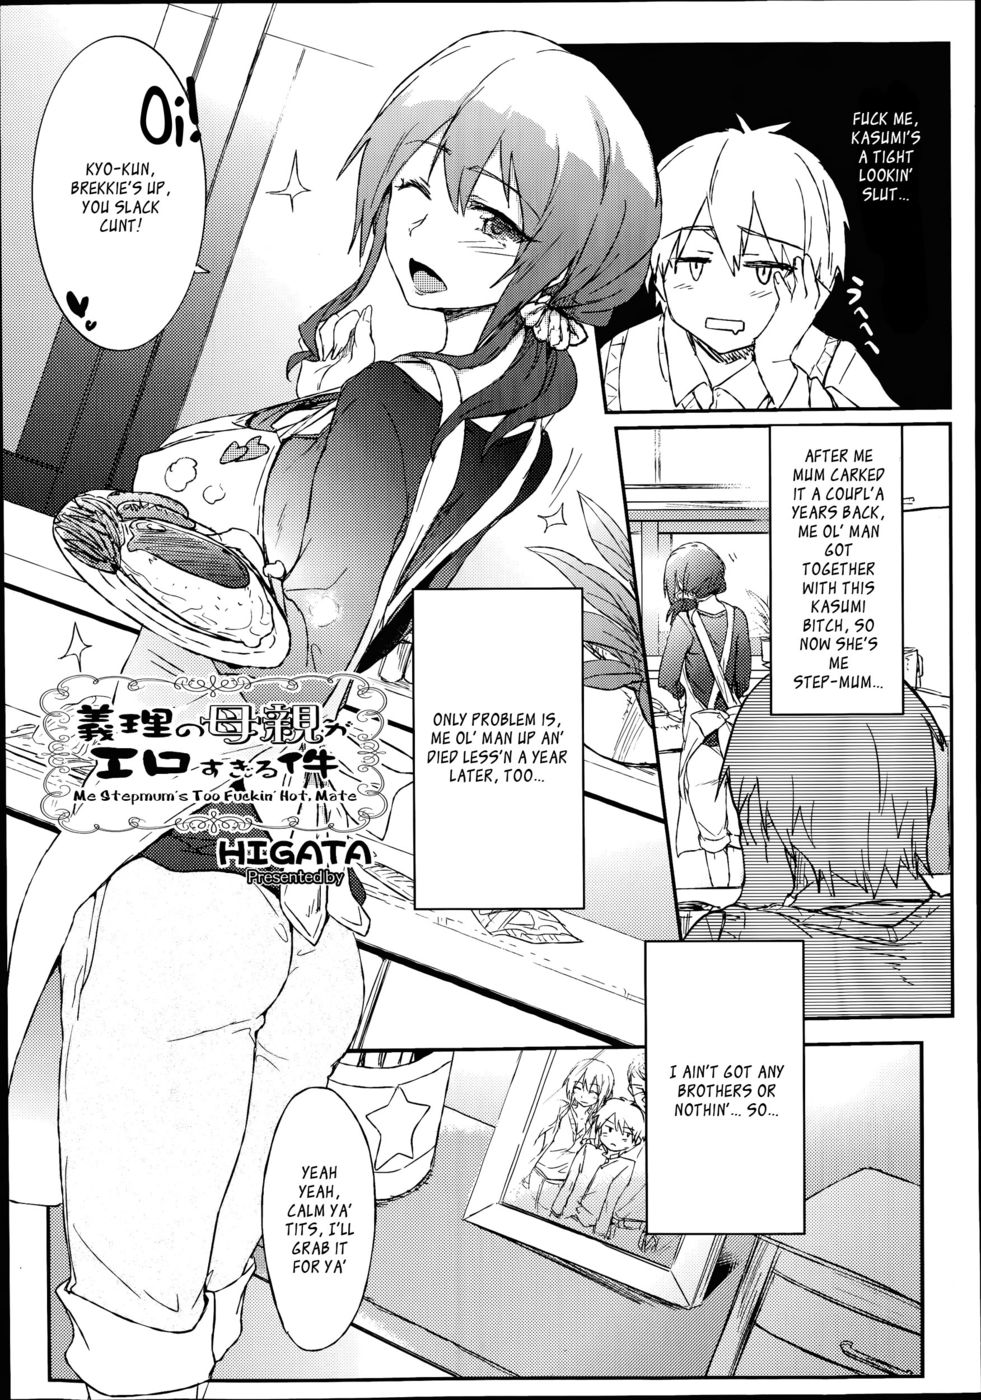 Hentai Manga Comic-Me Stepmum's Too Fuckin' Hot, Mate-Read-1